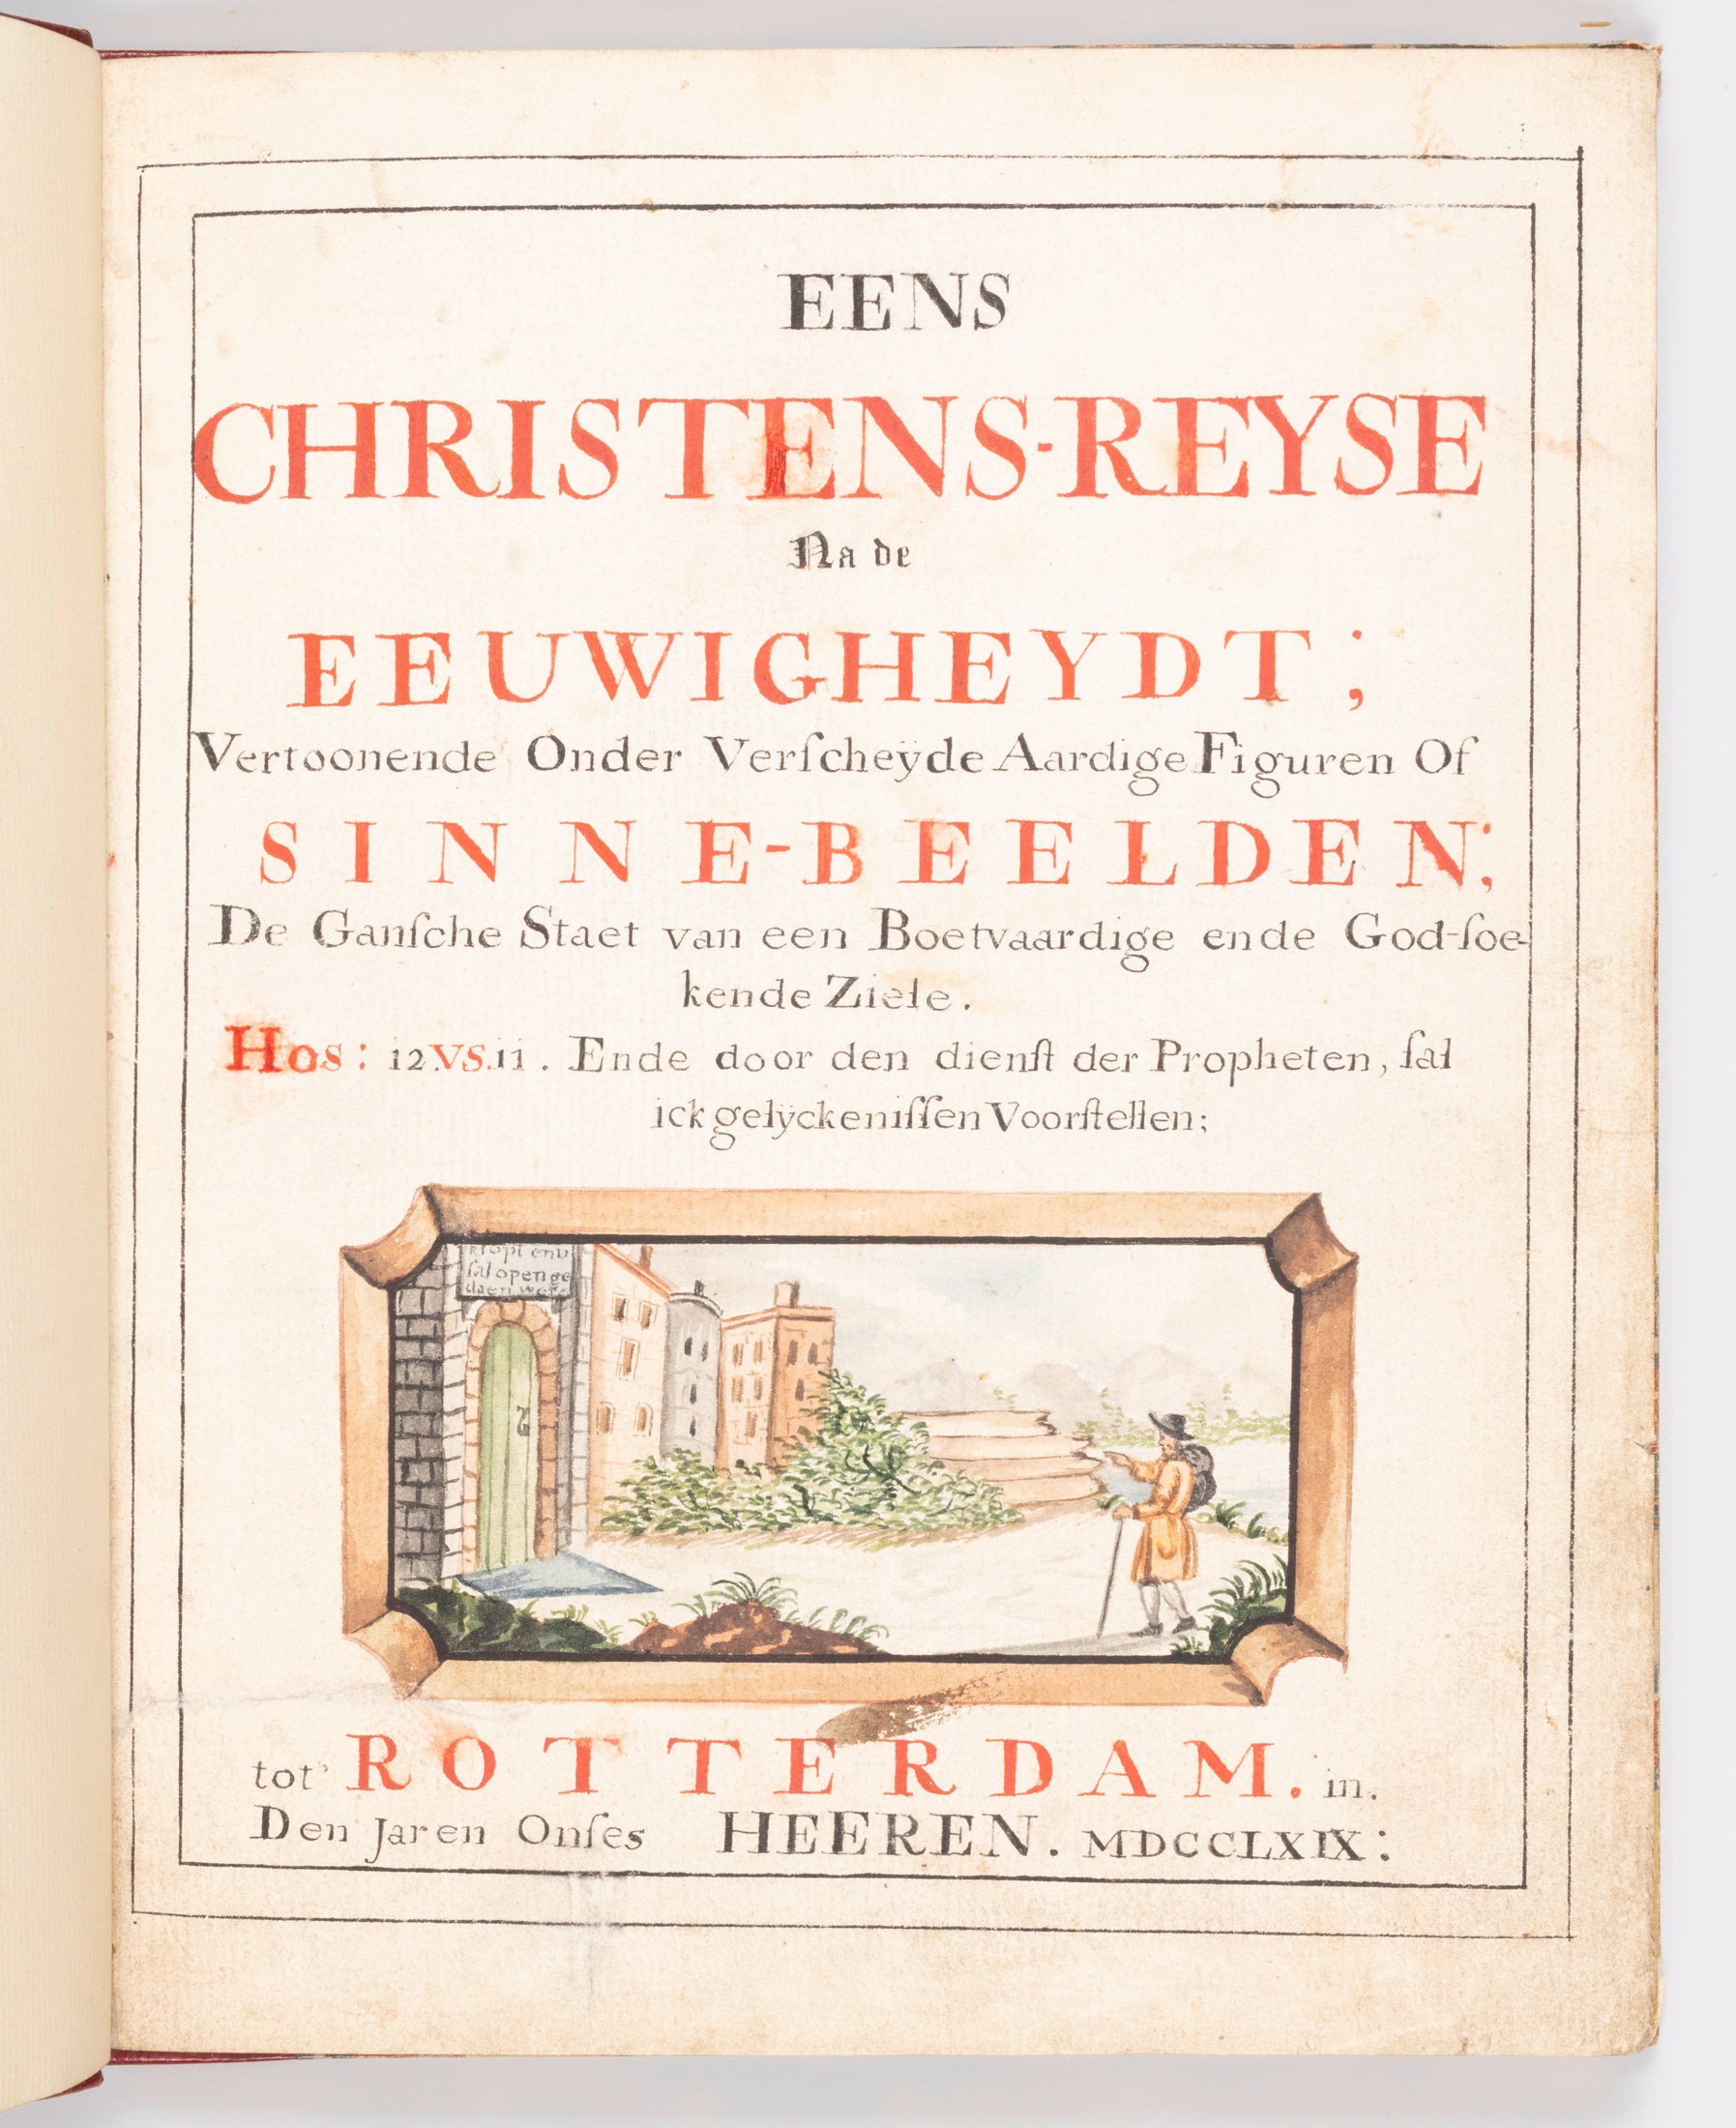 Pagina uit unieke handgeschreven en geaquarelleerde uitgave van John Bunyan beroemde The Pilgrim's Progress (foto: René den Engelsman)